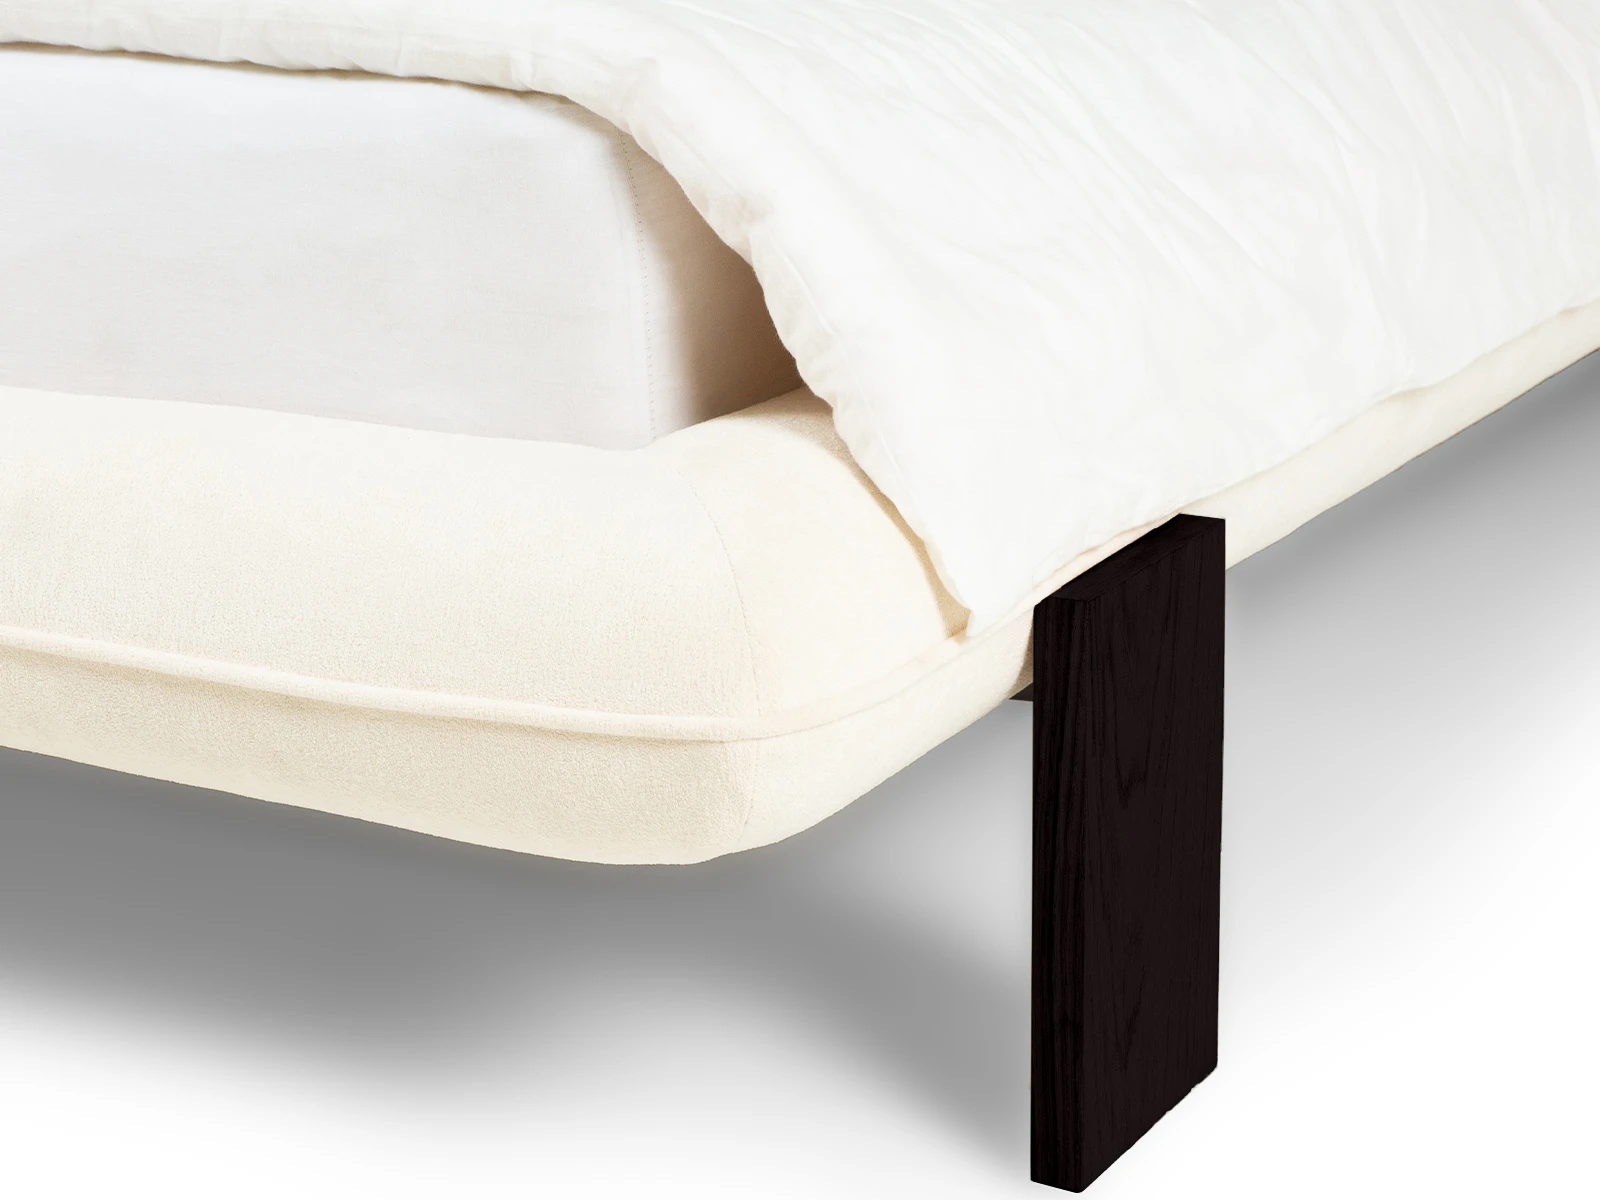 Кровать Softbay 160x200 (букле) серый белый 870554